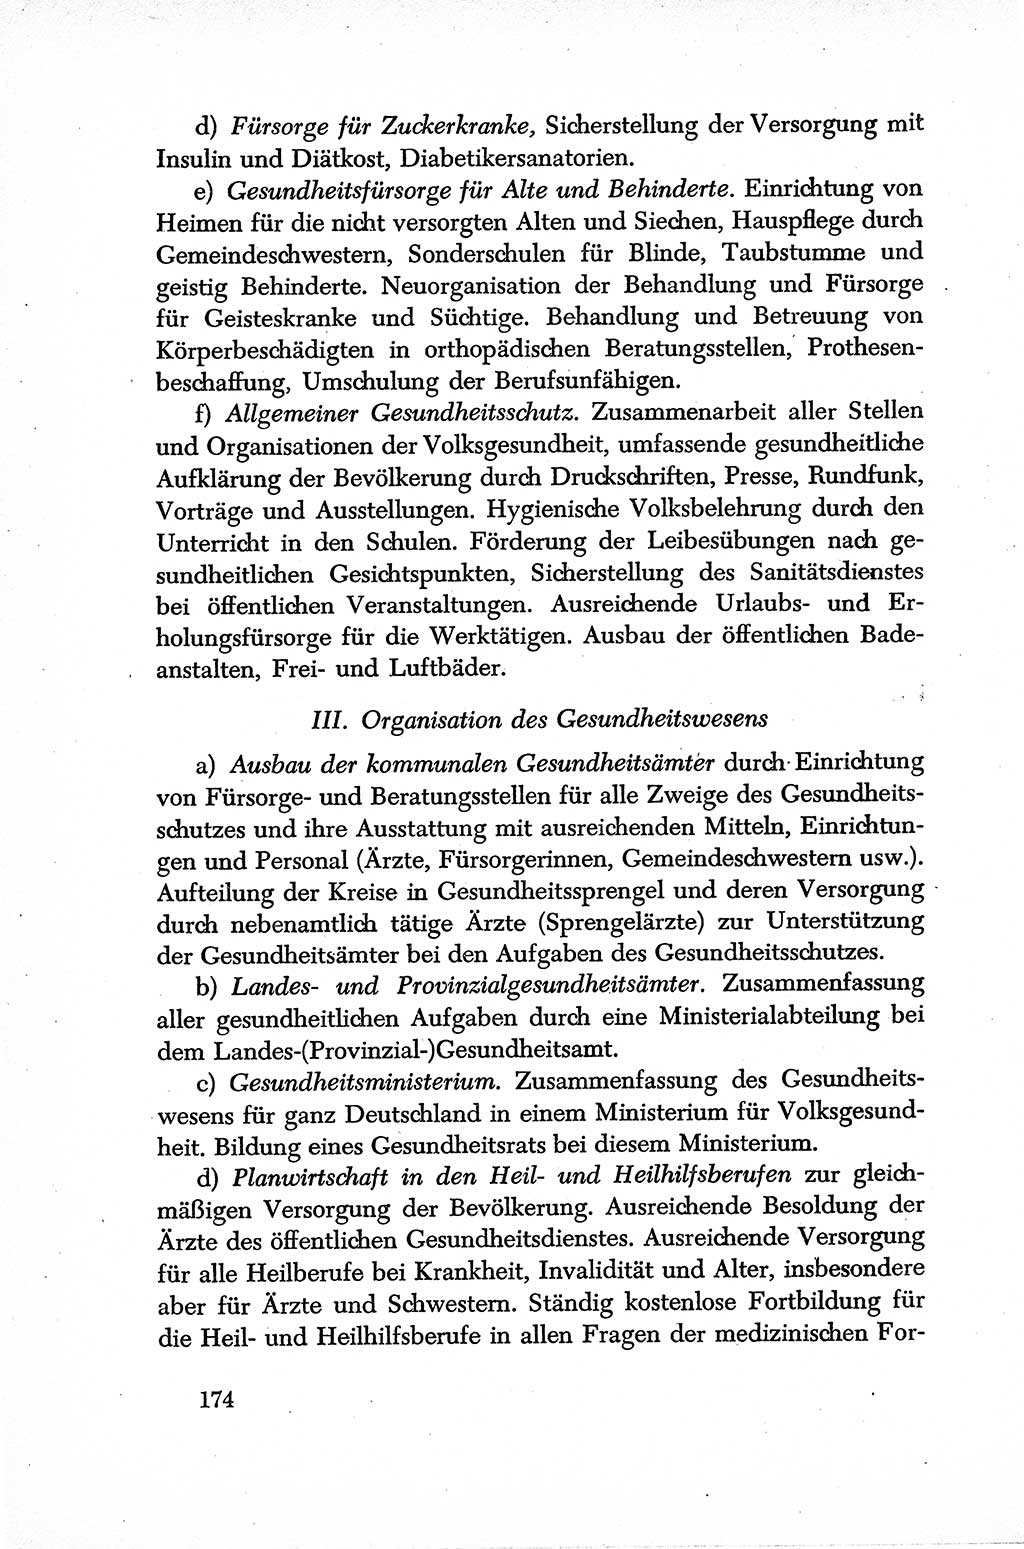 Dokumente der Sozialistischen Einheitspartei Deutschlands (SED) [Sowjetische Besatzungszone (SBZ) Deutschlands] 1946-1948, Seite 174 (Dok. SED SBZ Dtl. 1946-1948, S. 174)